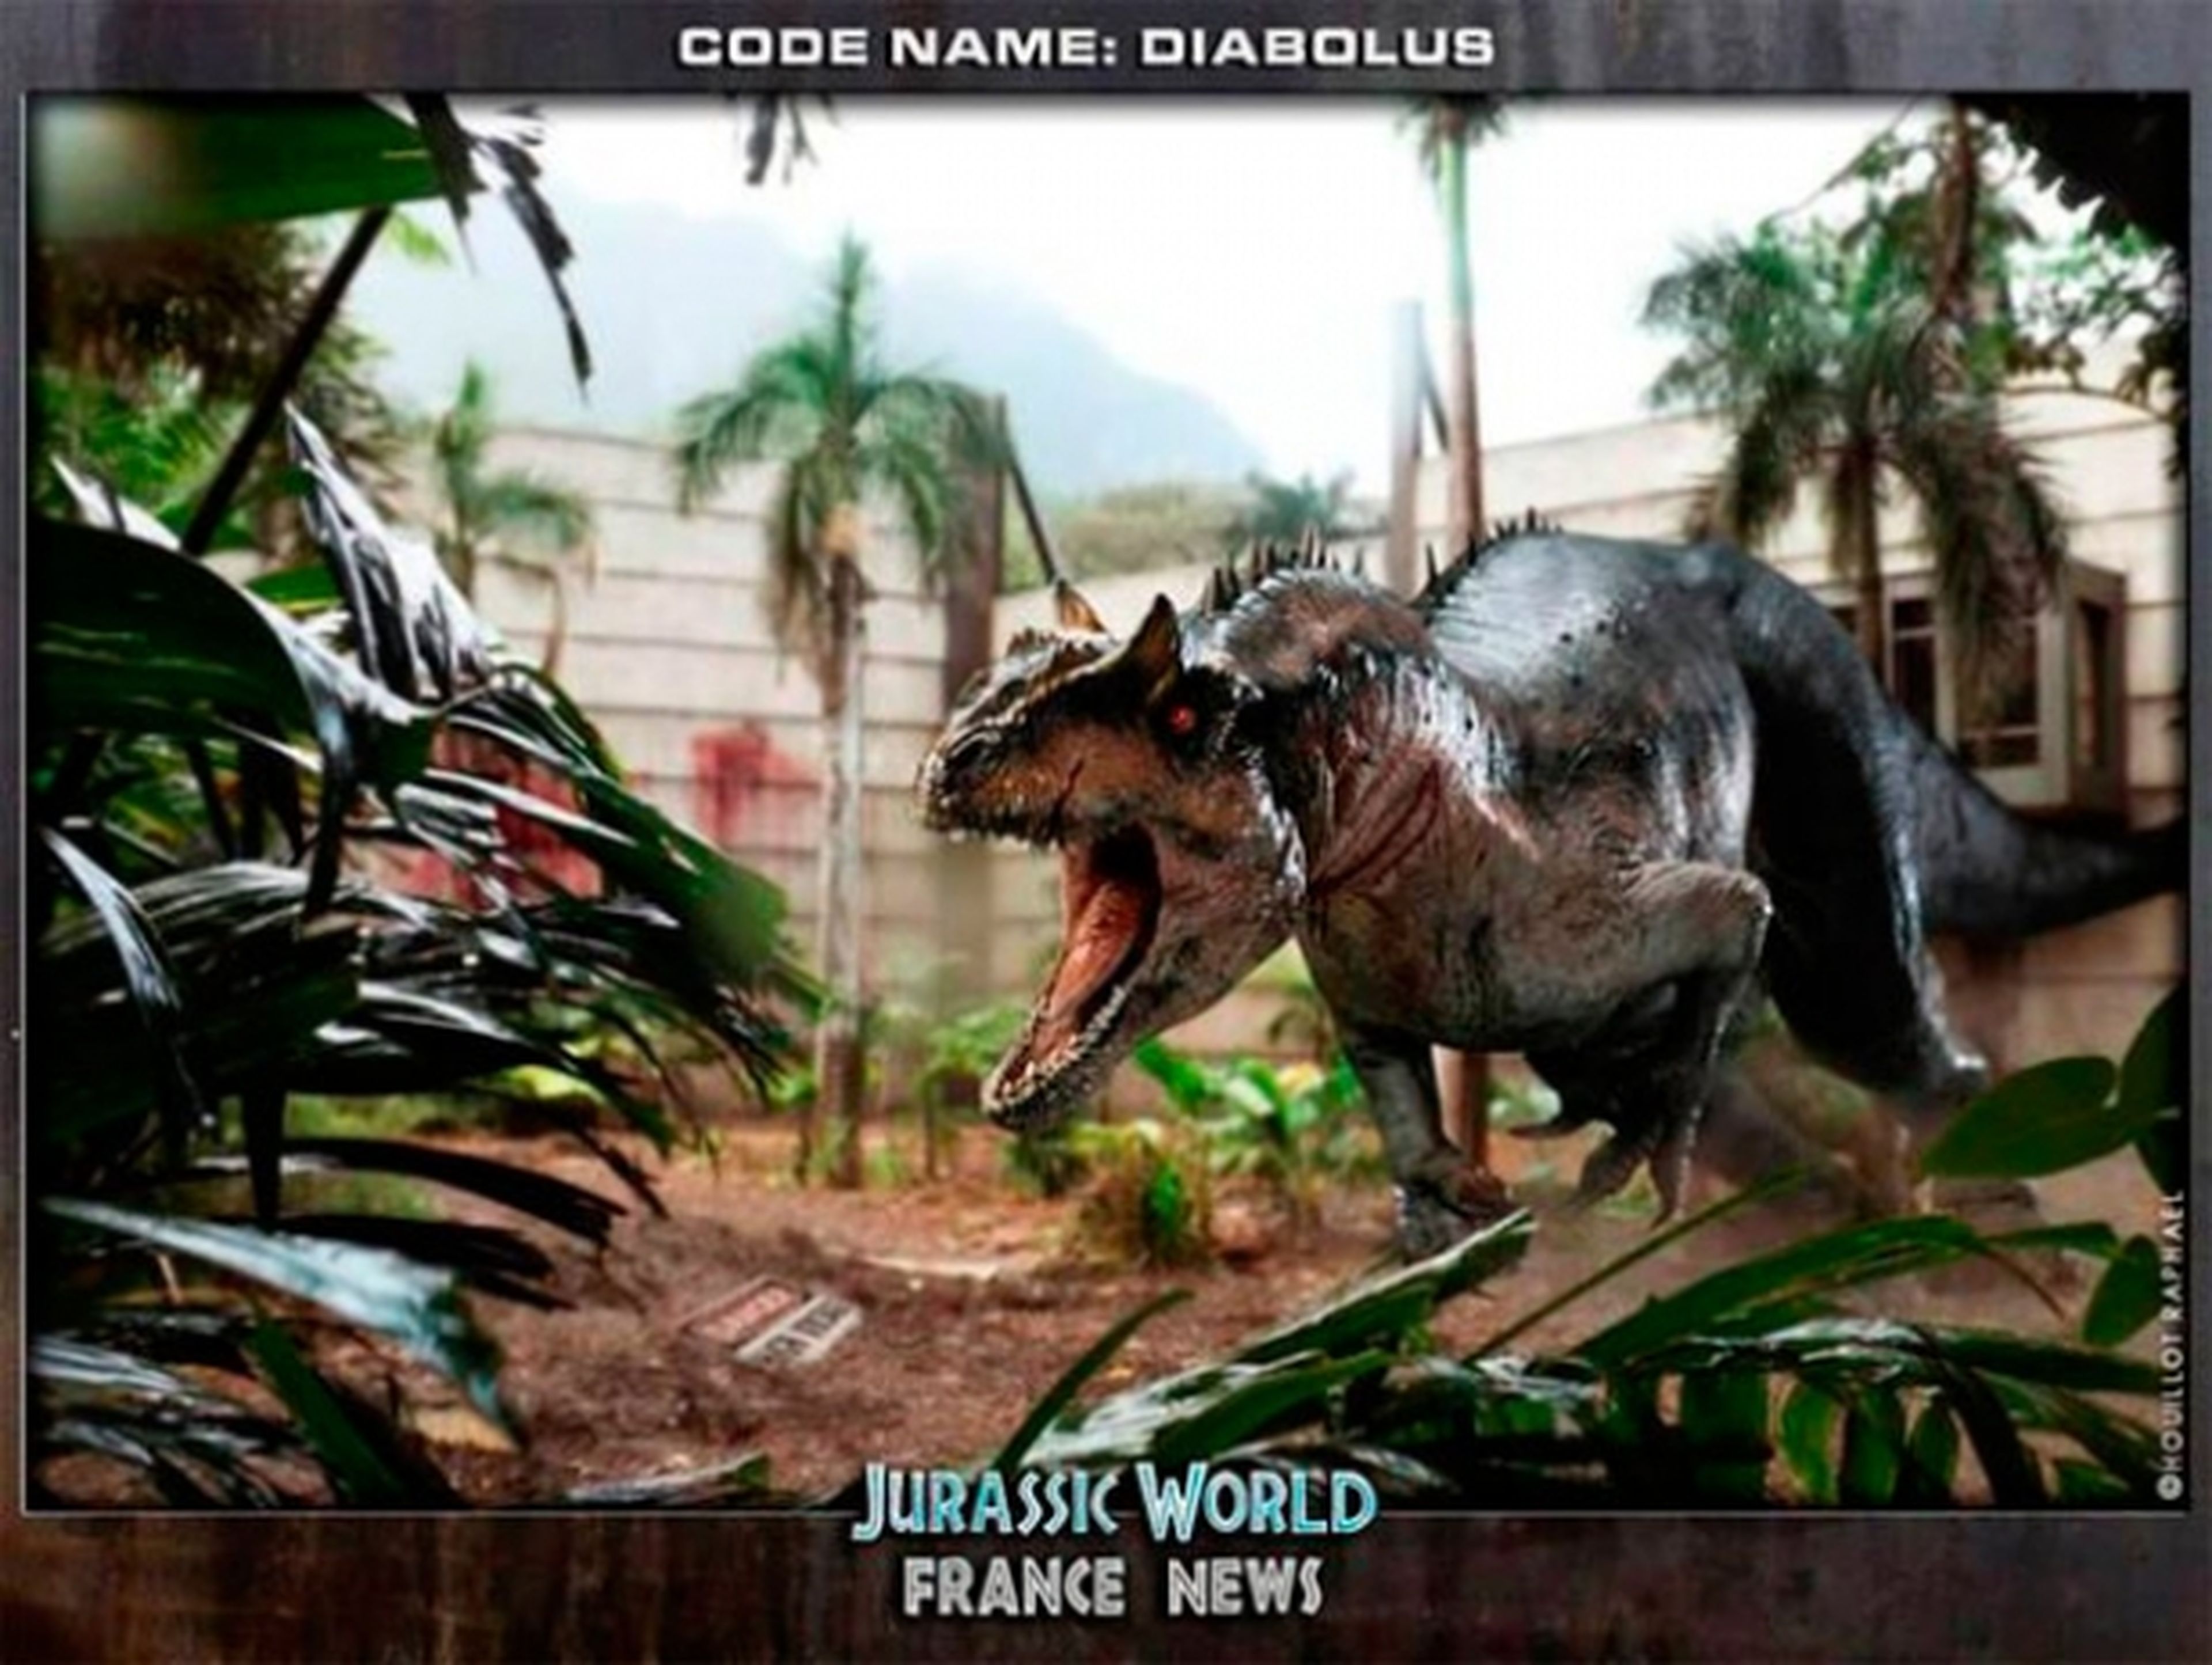 ¡Ojo! La primera imagen del Diabolus de Jurassic World es un fanart